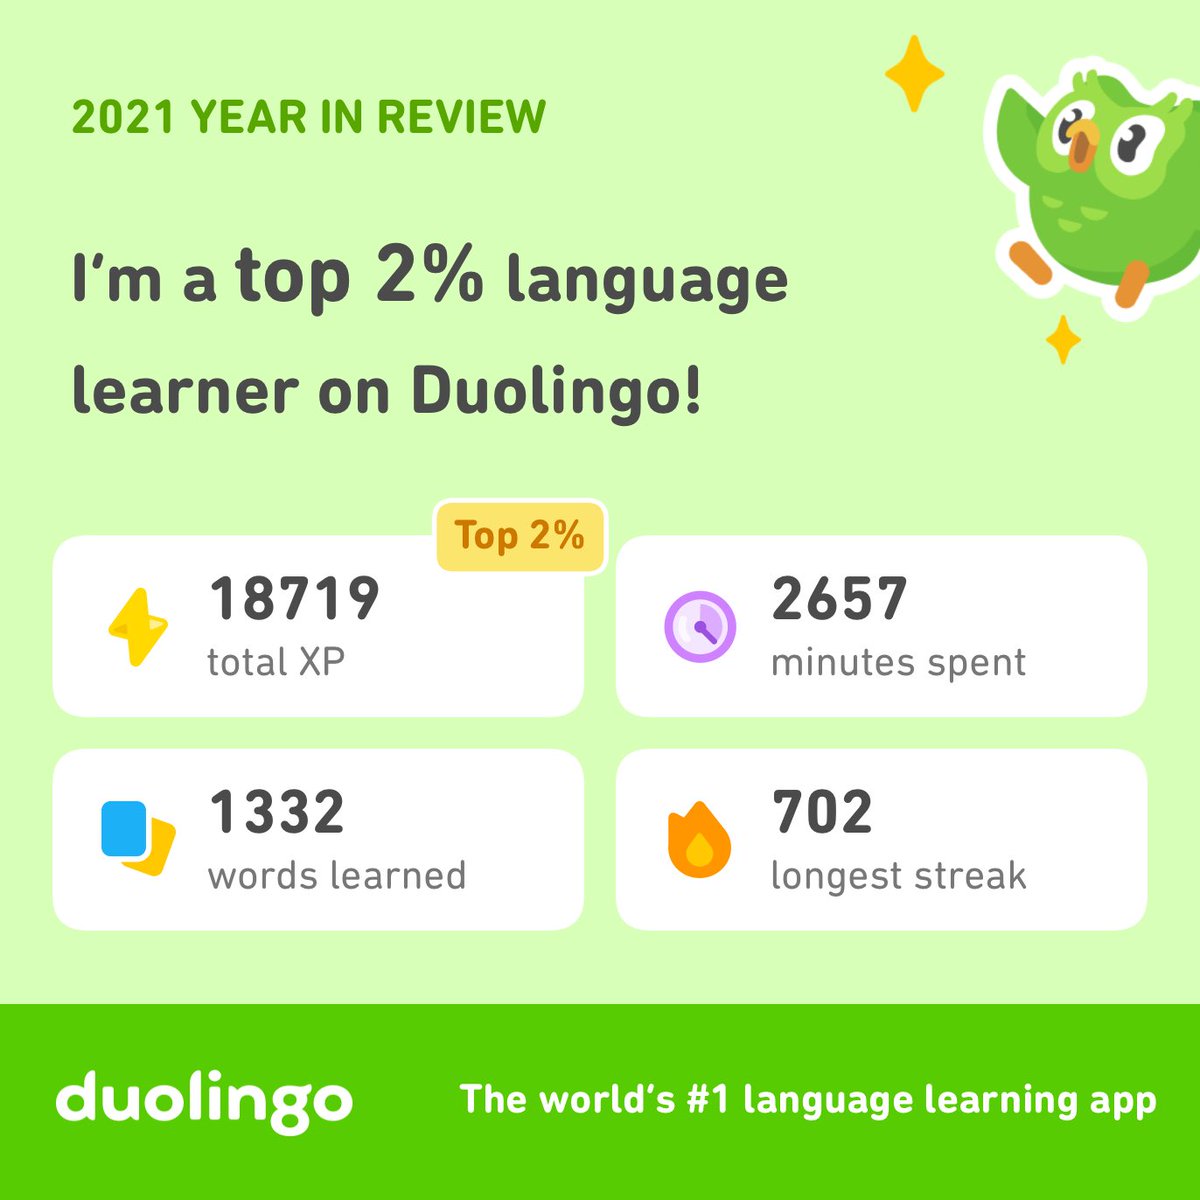 My language streak stats for 2021
@duolingo 
#Duolingo365 #duoday2021